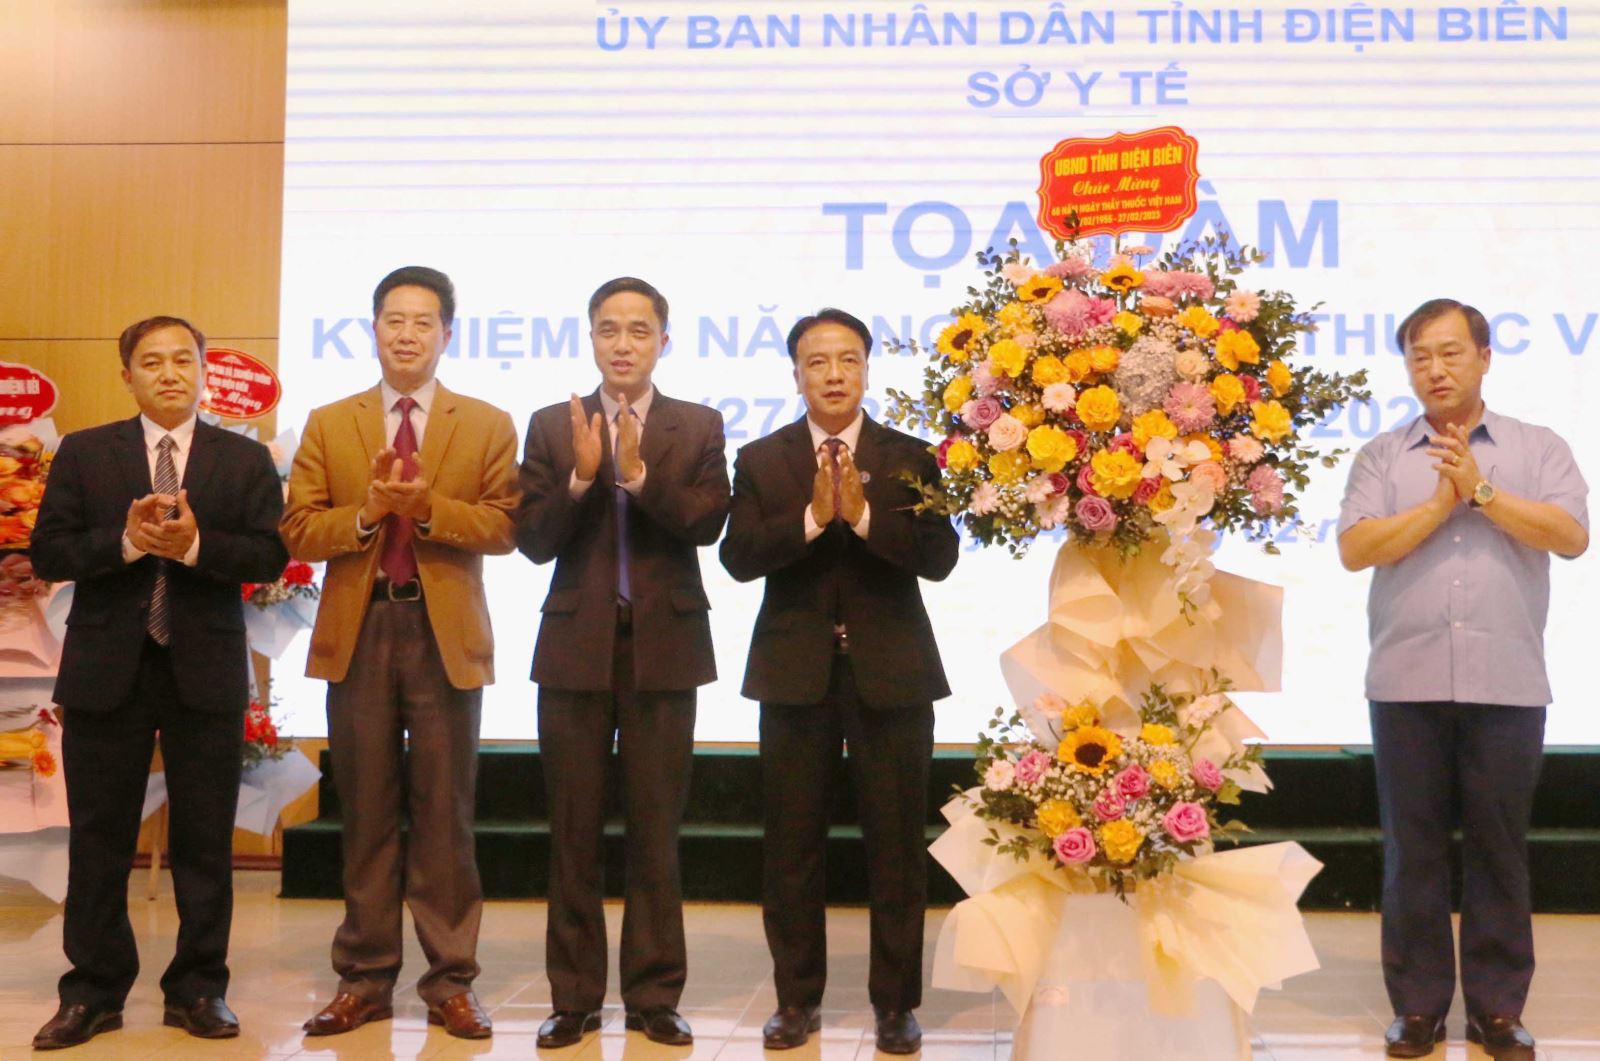 Đồng chí Vừ A Bằng, Phó Chủ tịch UBND tỉnh tặng hoa chúc mừng Ngành Y tế nhân dịp kỷ niệm 68 năm Ngày Thầy thuốc Việt Nam (27/2/1955 - 27/2/2023)